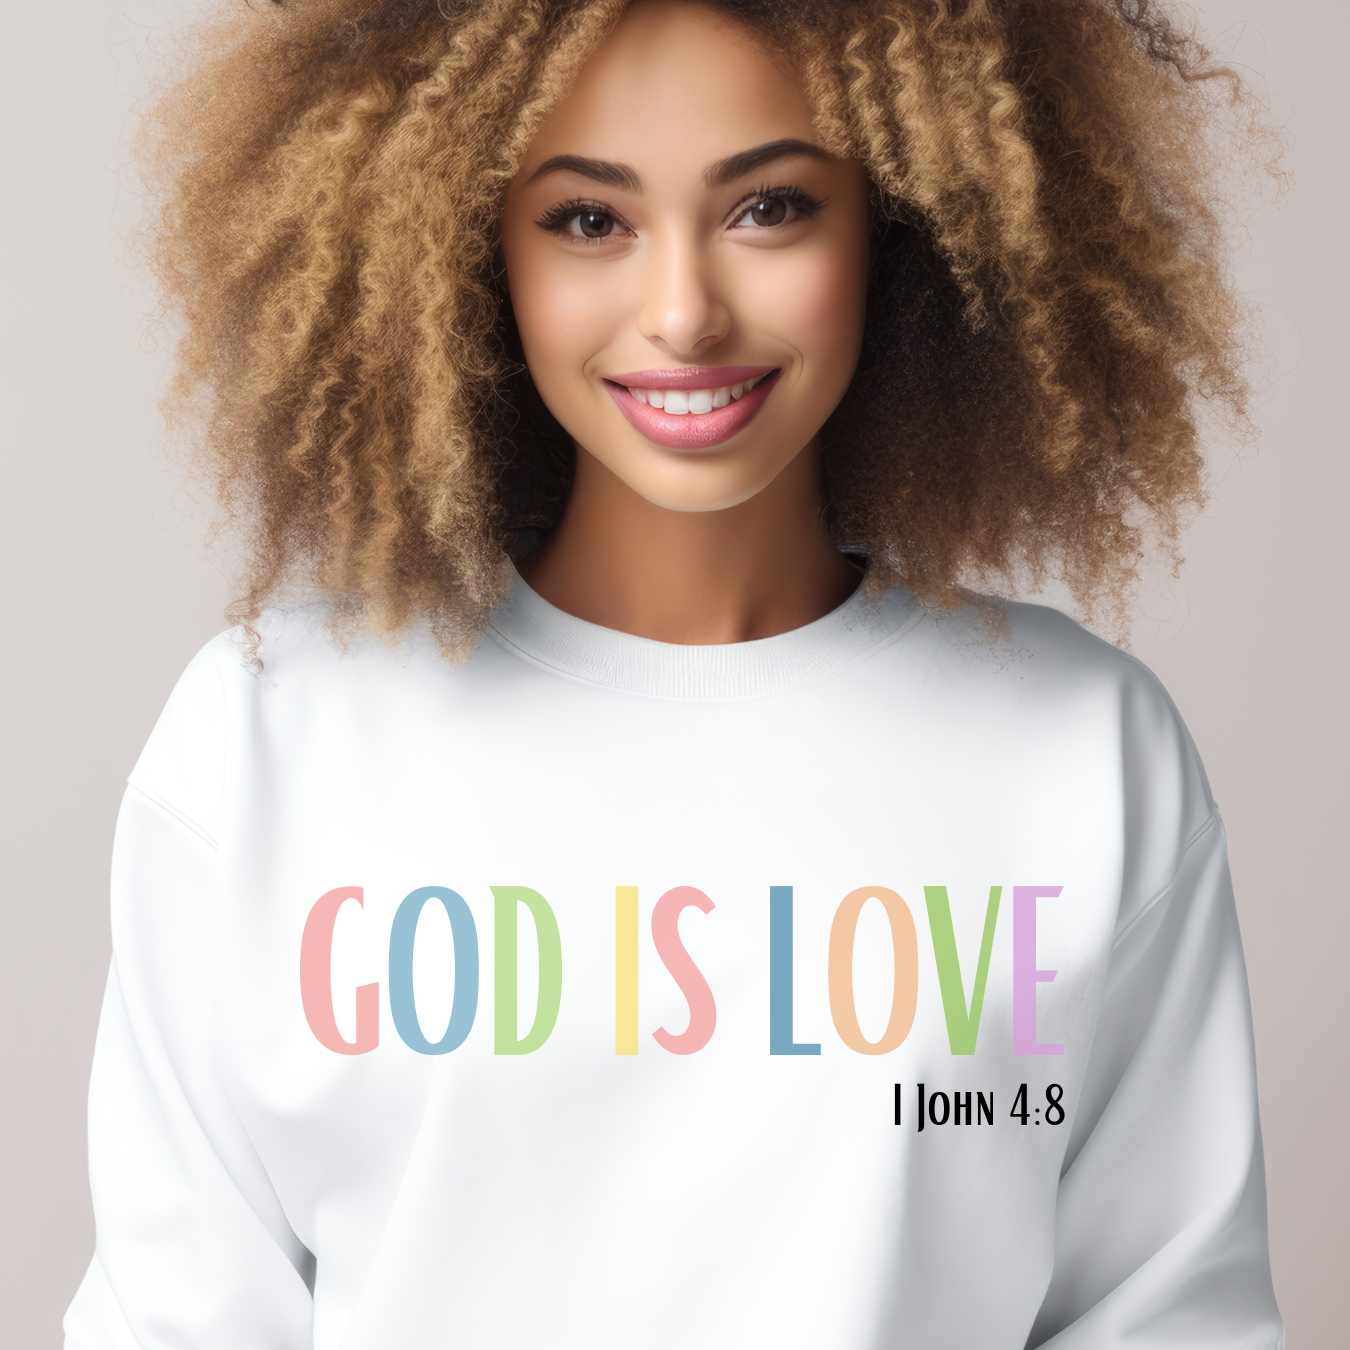 1 John 4:8 GOD is love